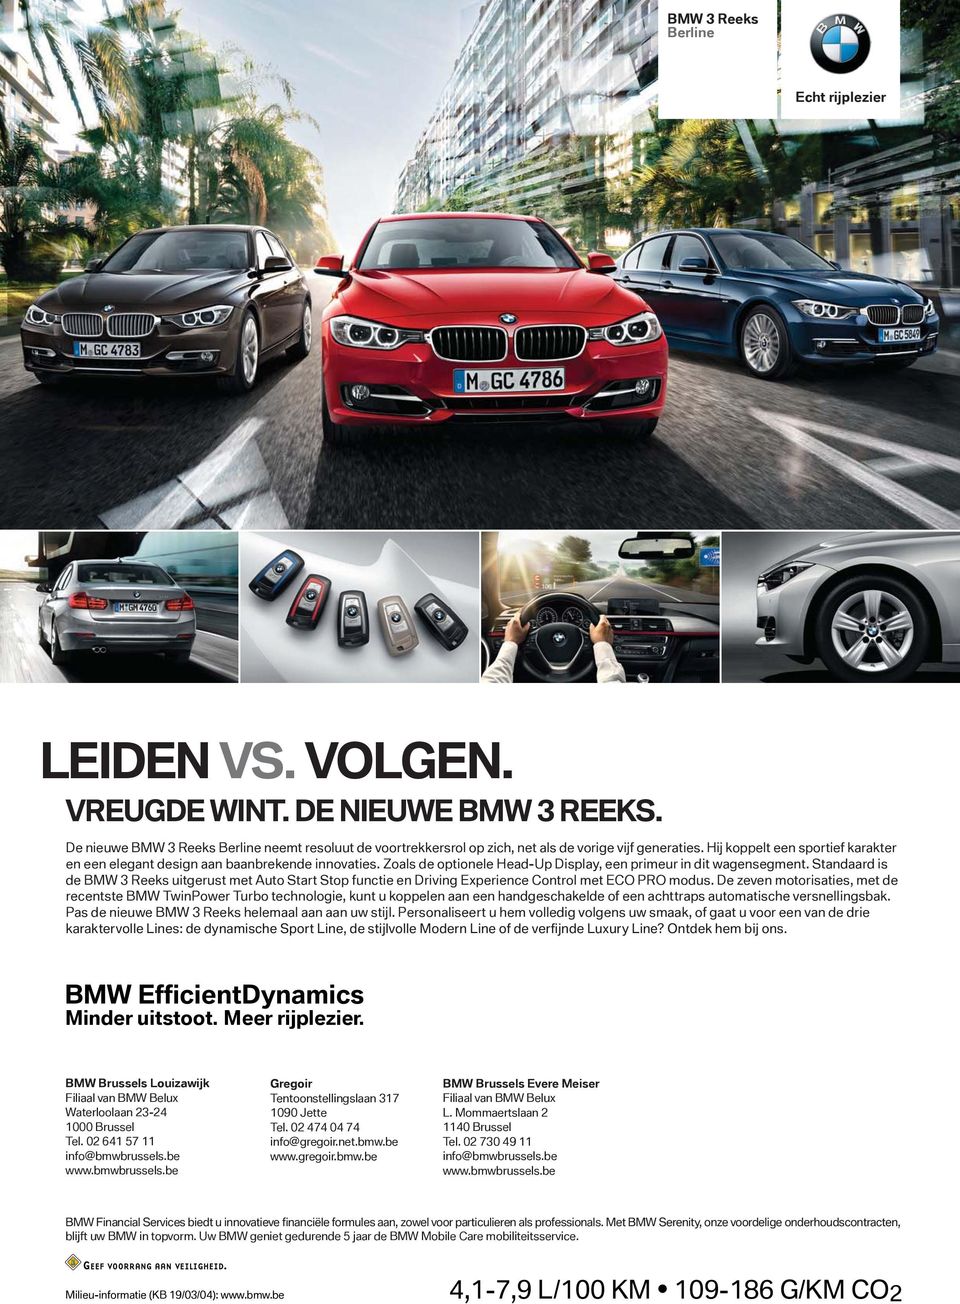 Standaard is de BMW 3 Reeks uitgerust met Auto Start Stop functie en Driving Experience Control met ECO PRO modus.